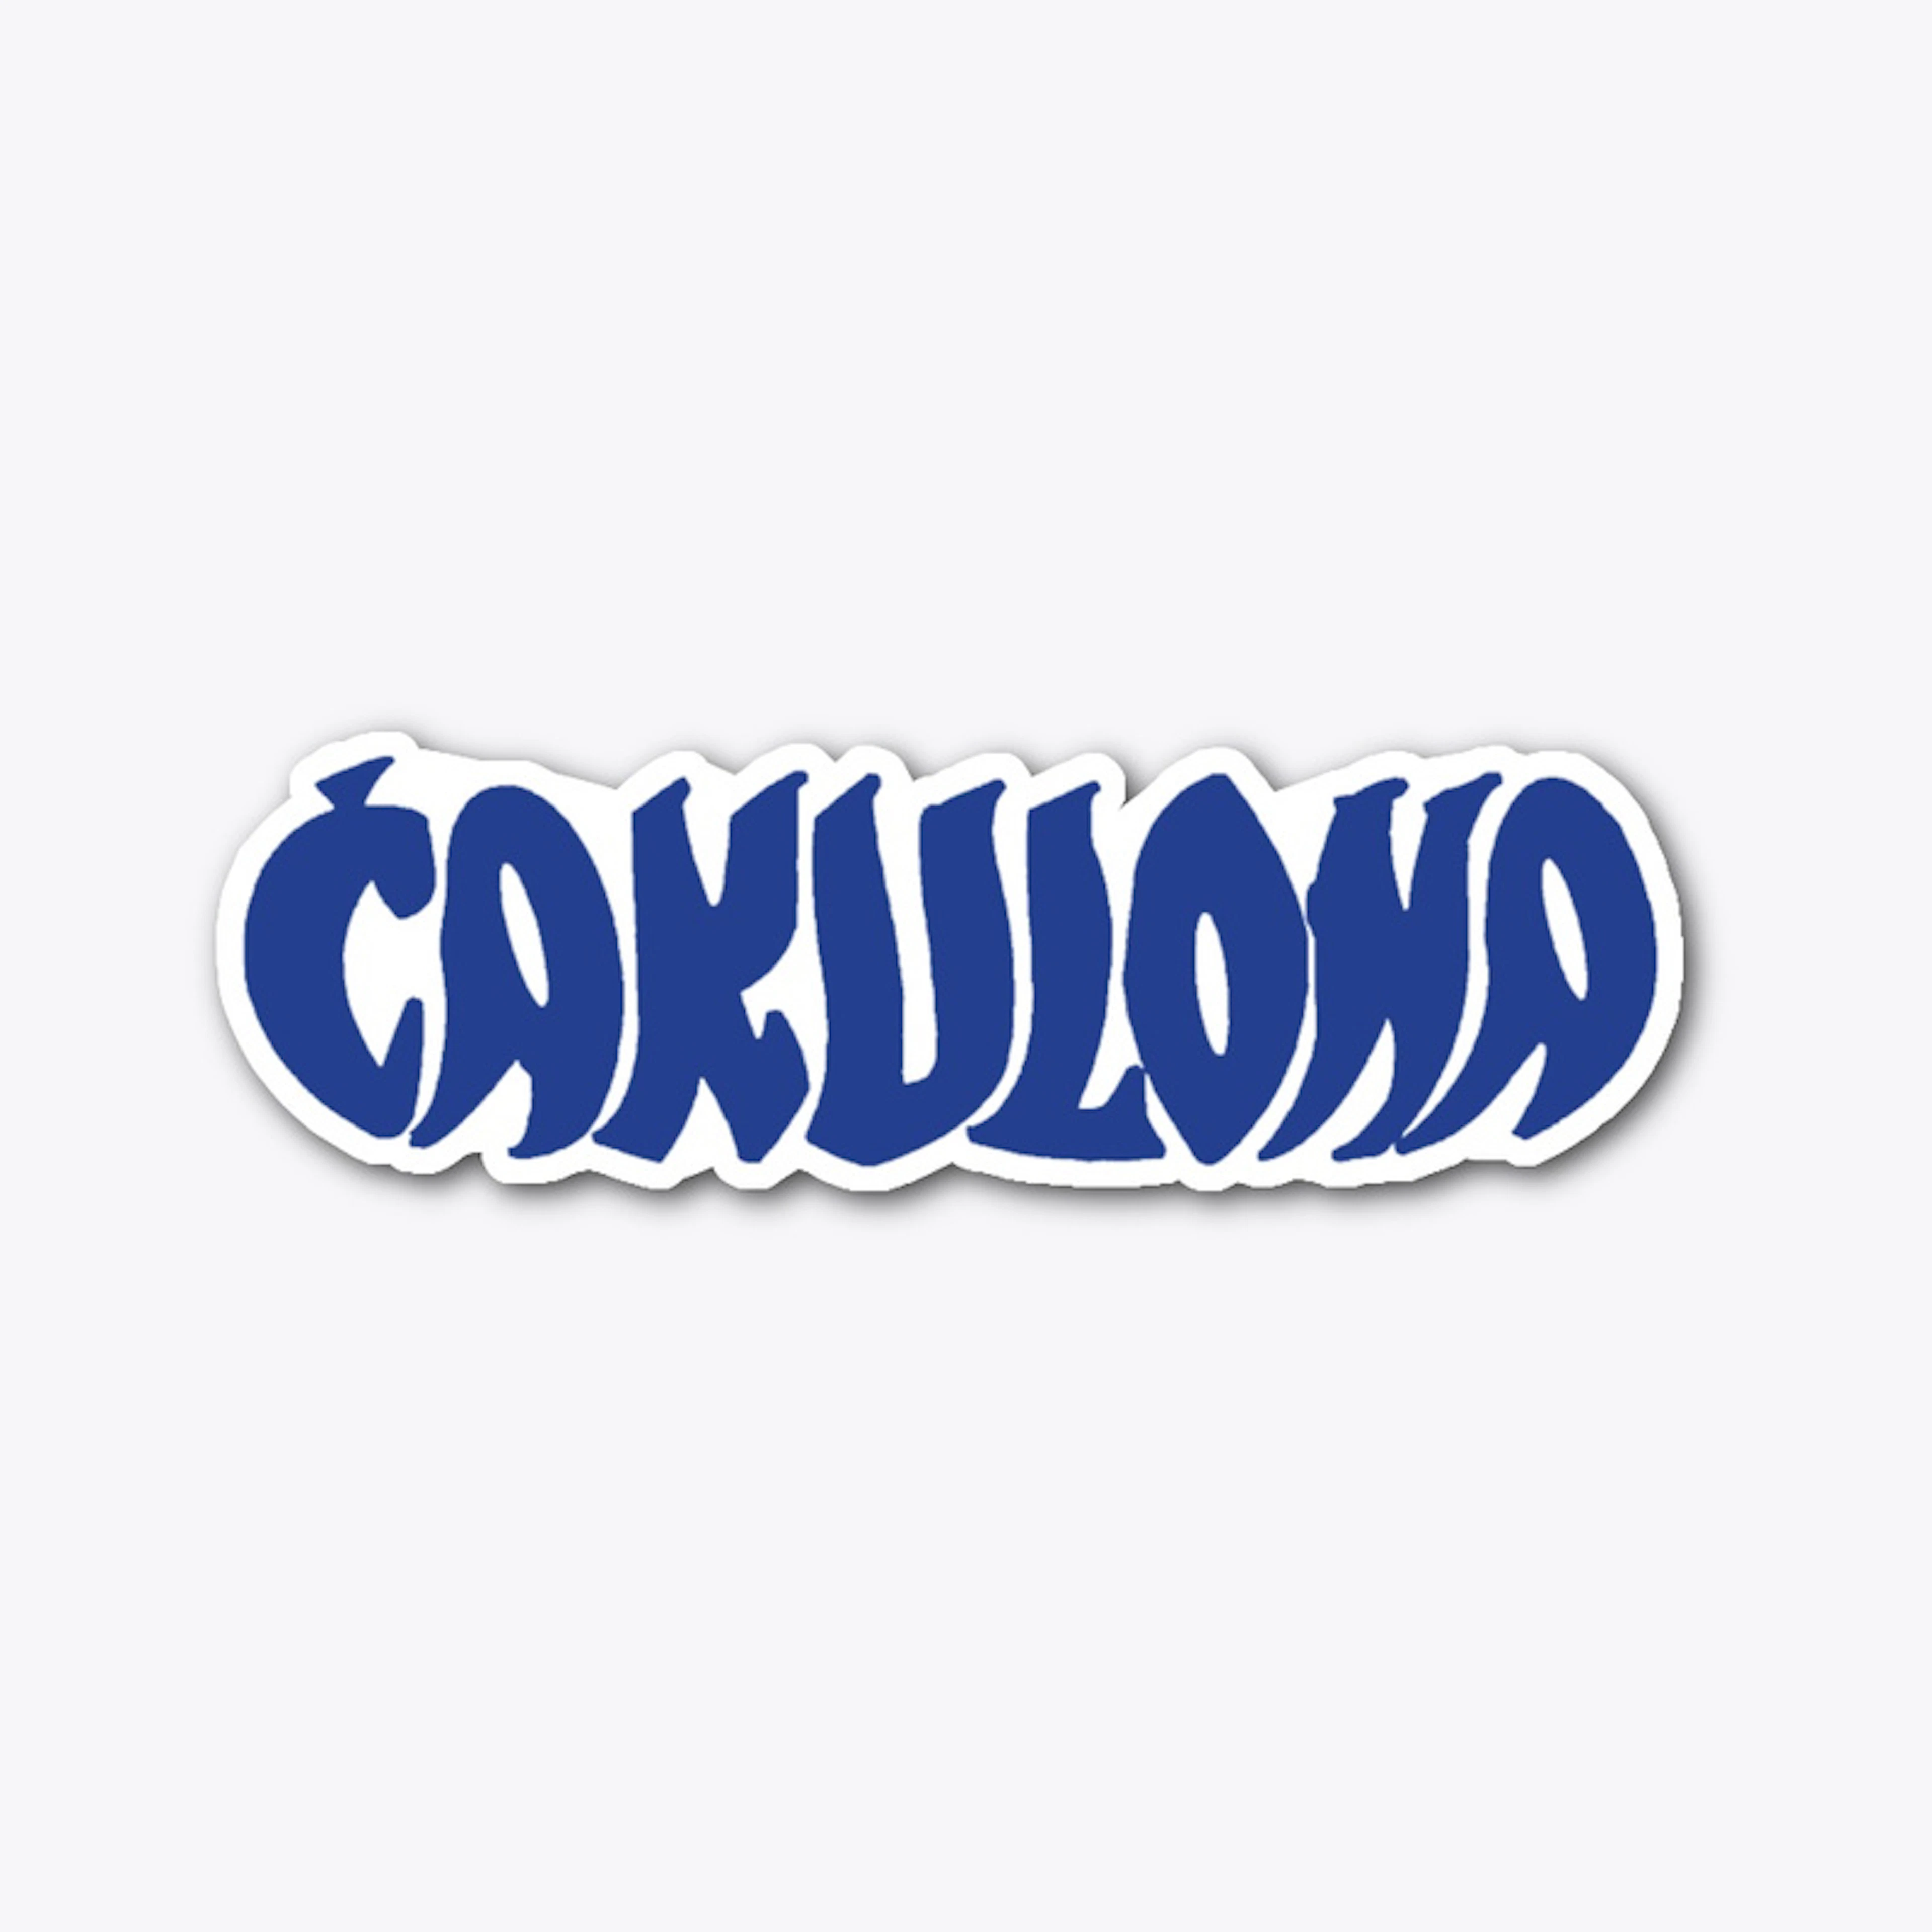 Ćakulona logo